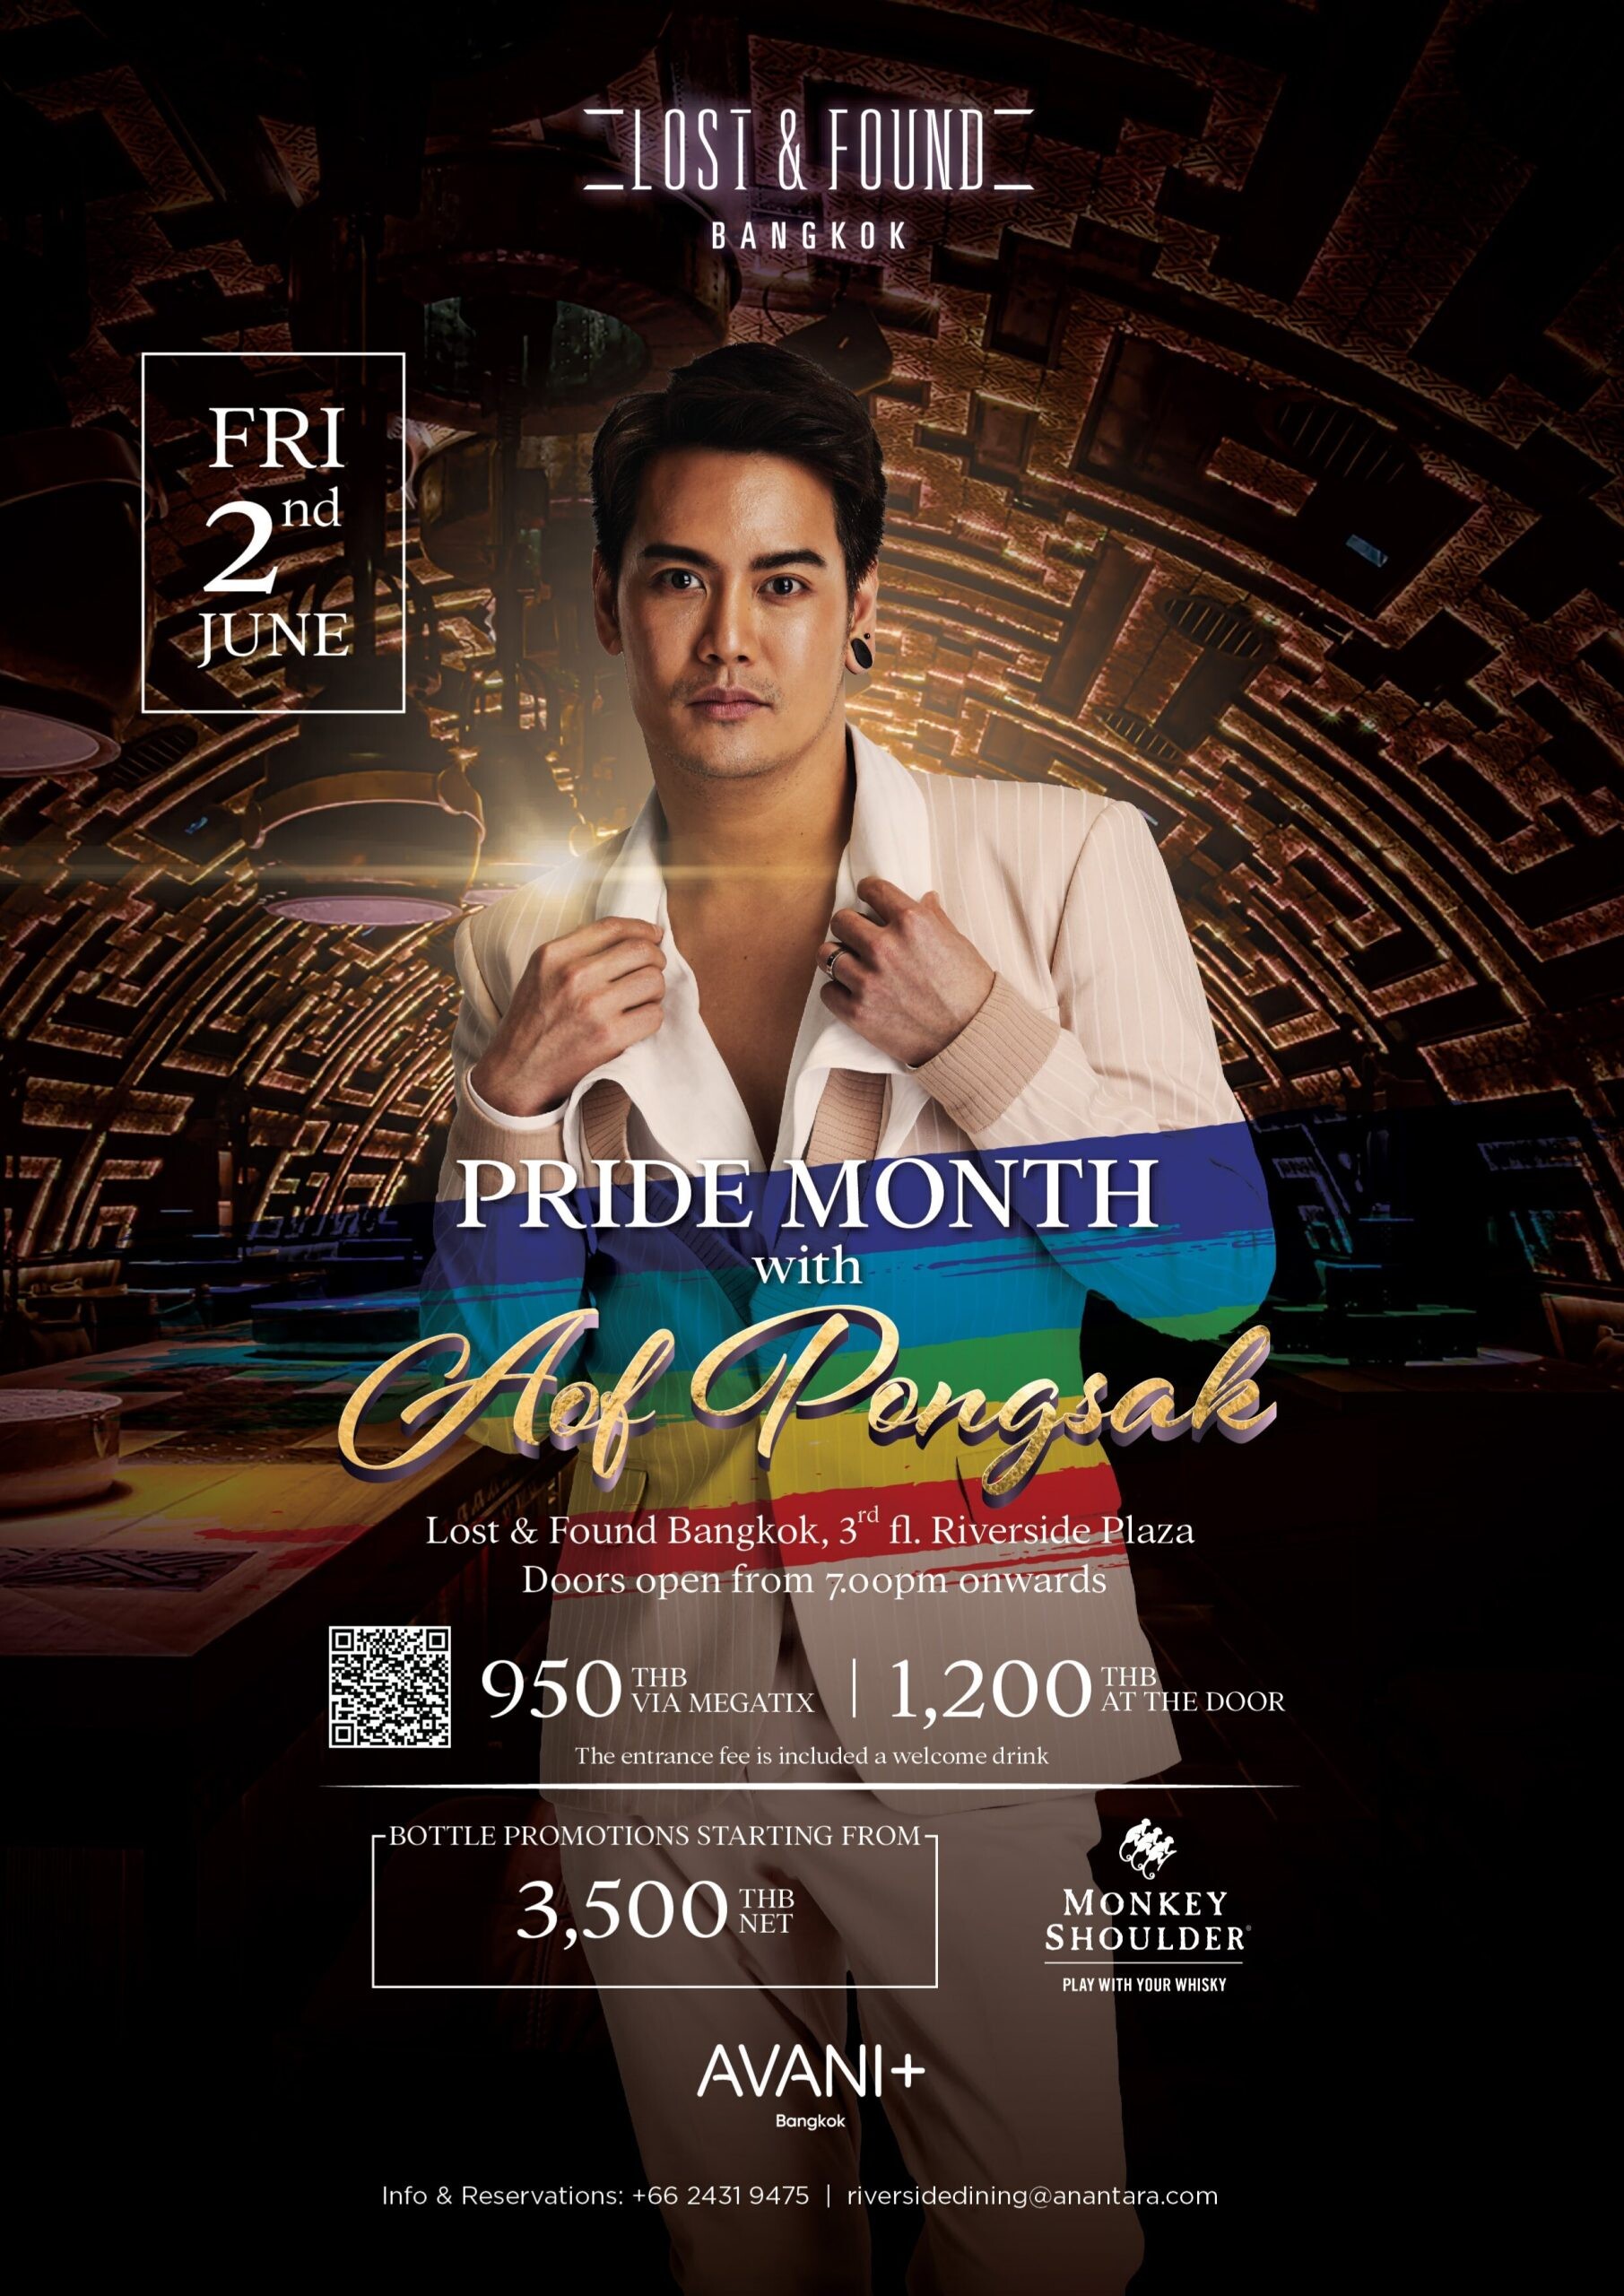 ปาร์ตี้ฉลอง Pride Month สุดมันส์กับ "อ๊อฟ ปองศักดิ์" เปิดจำหน่ายบัตรแล้ววันนี้